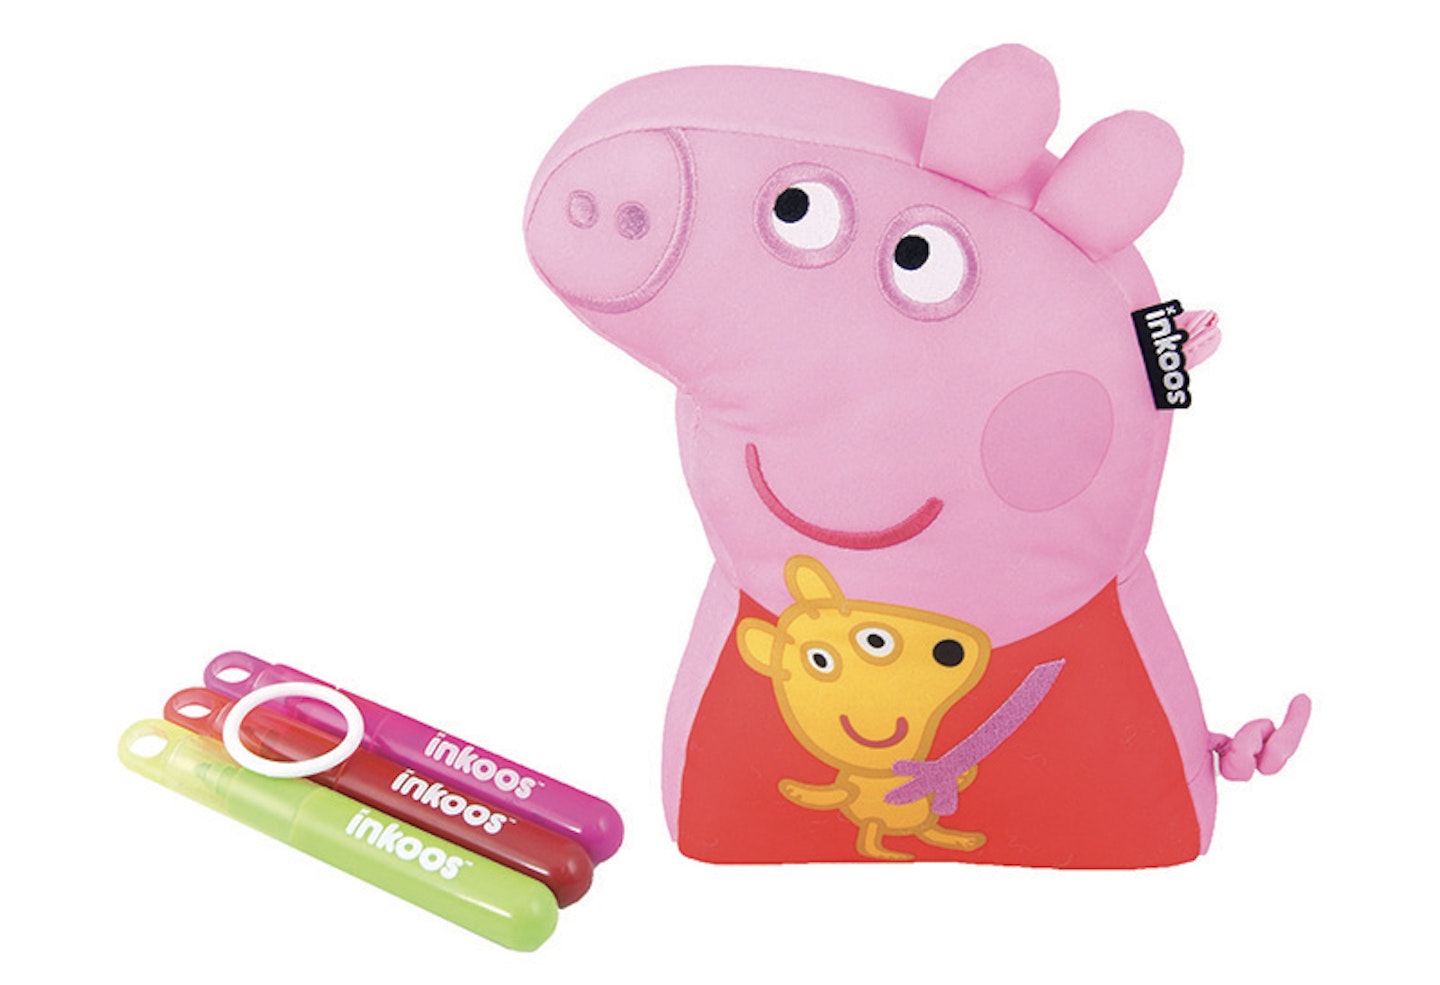 Inkoos Colour 'n' Create Peppa Pig, £19.99, amazon.co.uk